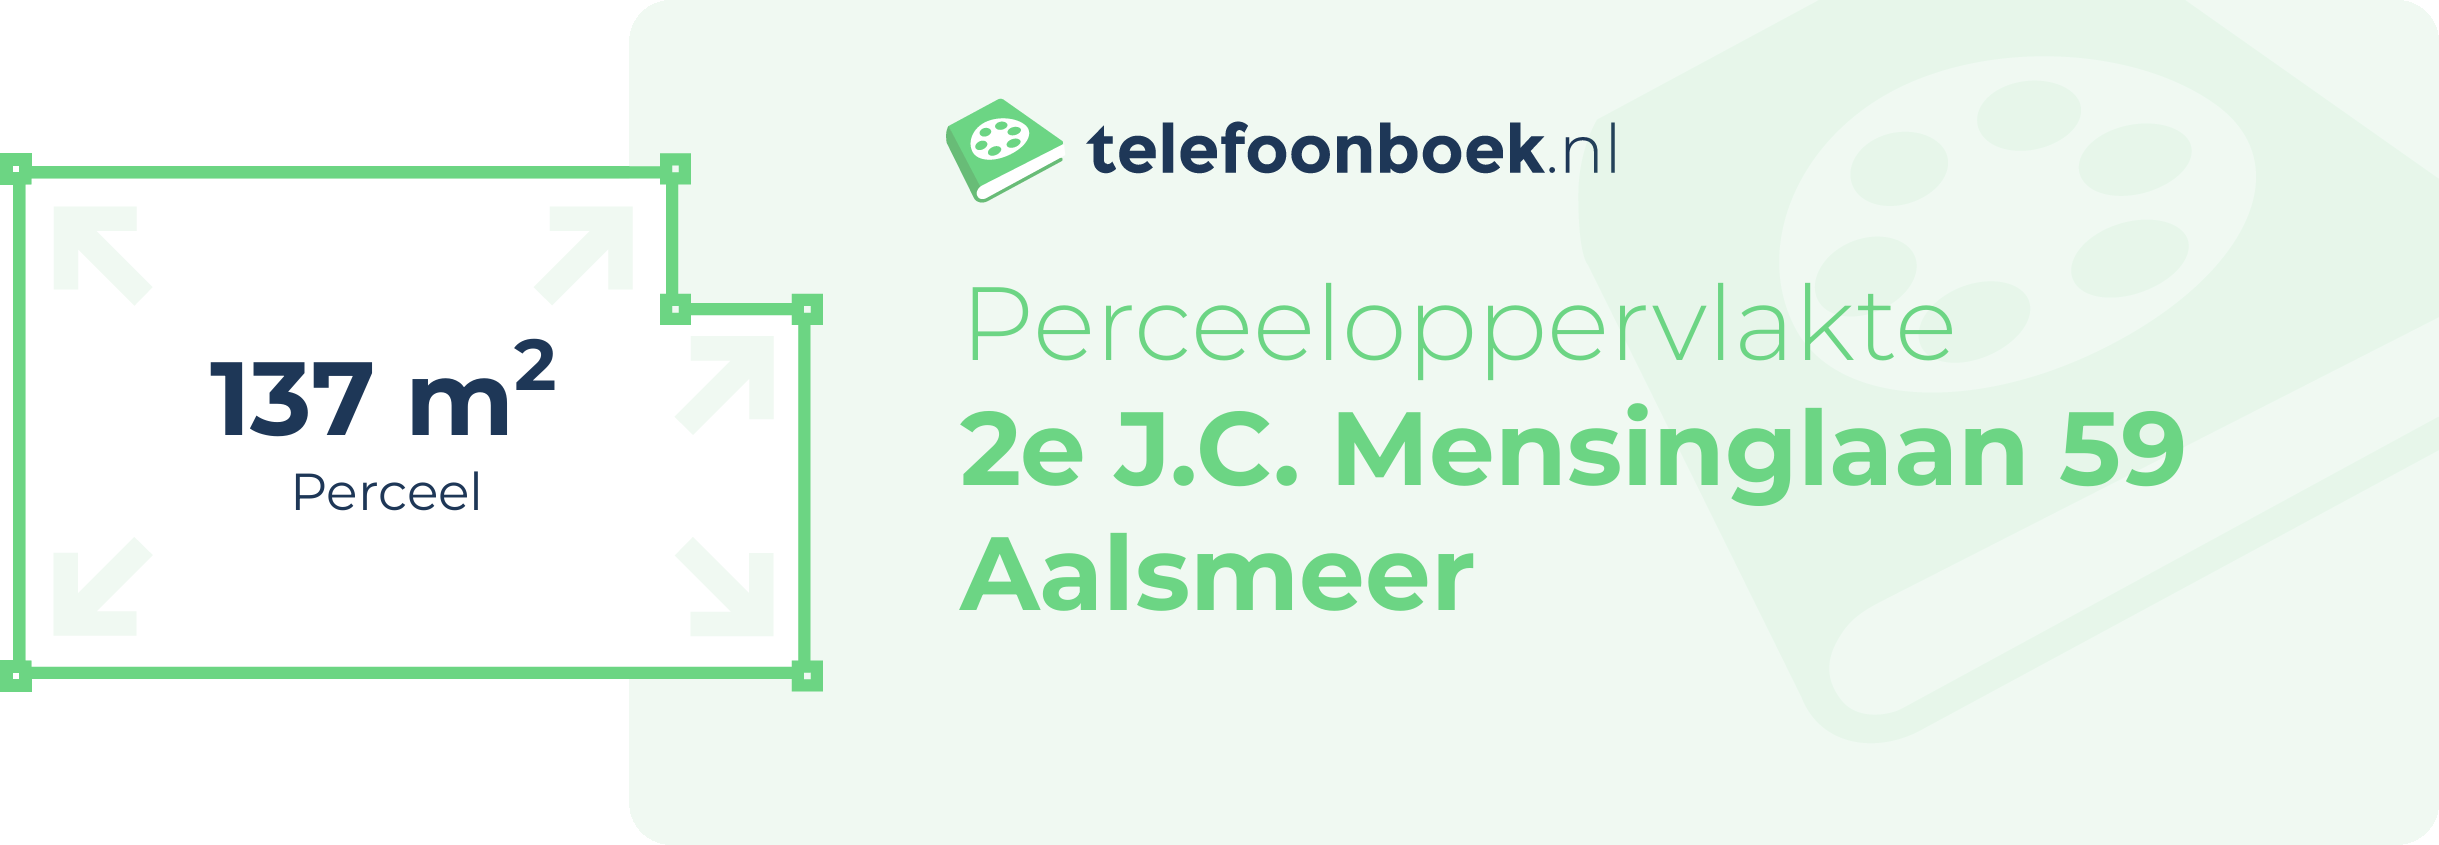 Perceeloppervlakte 2e J.C. Mensinglaan 59 Aalsmeer